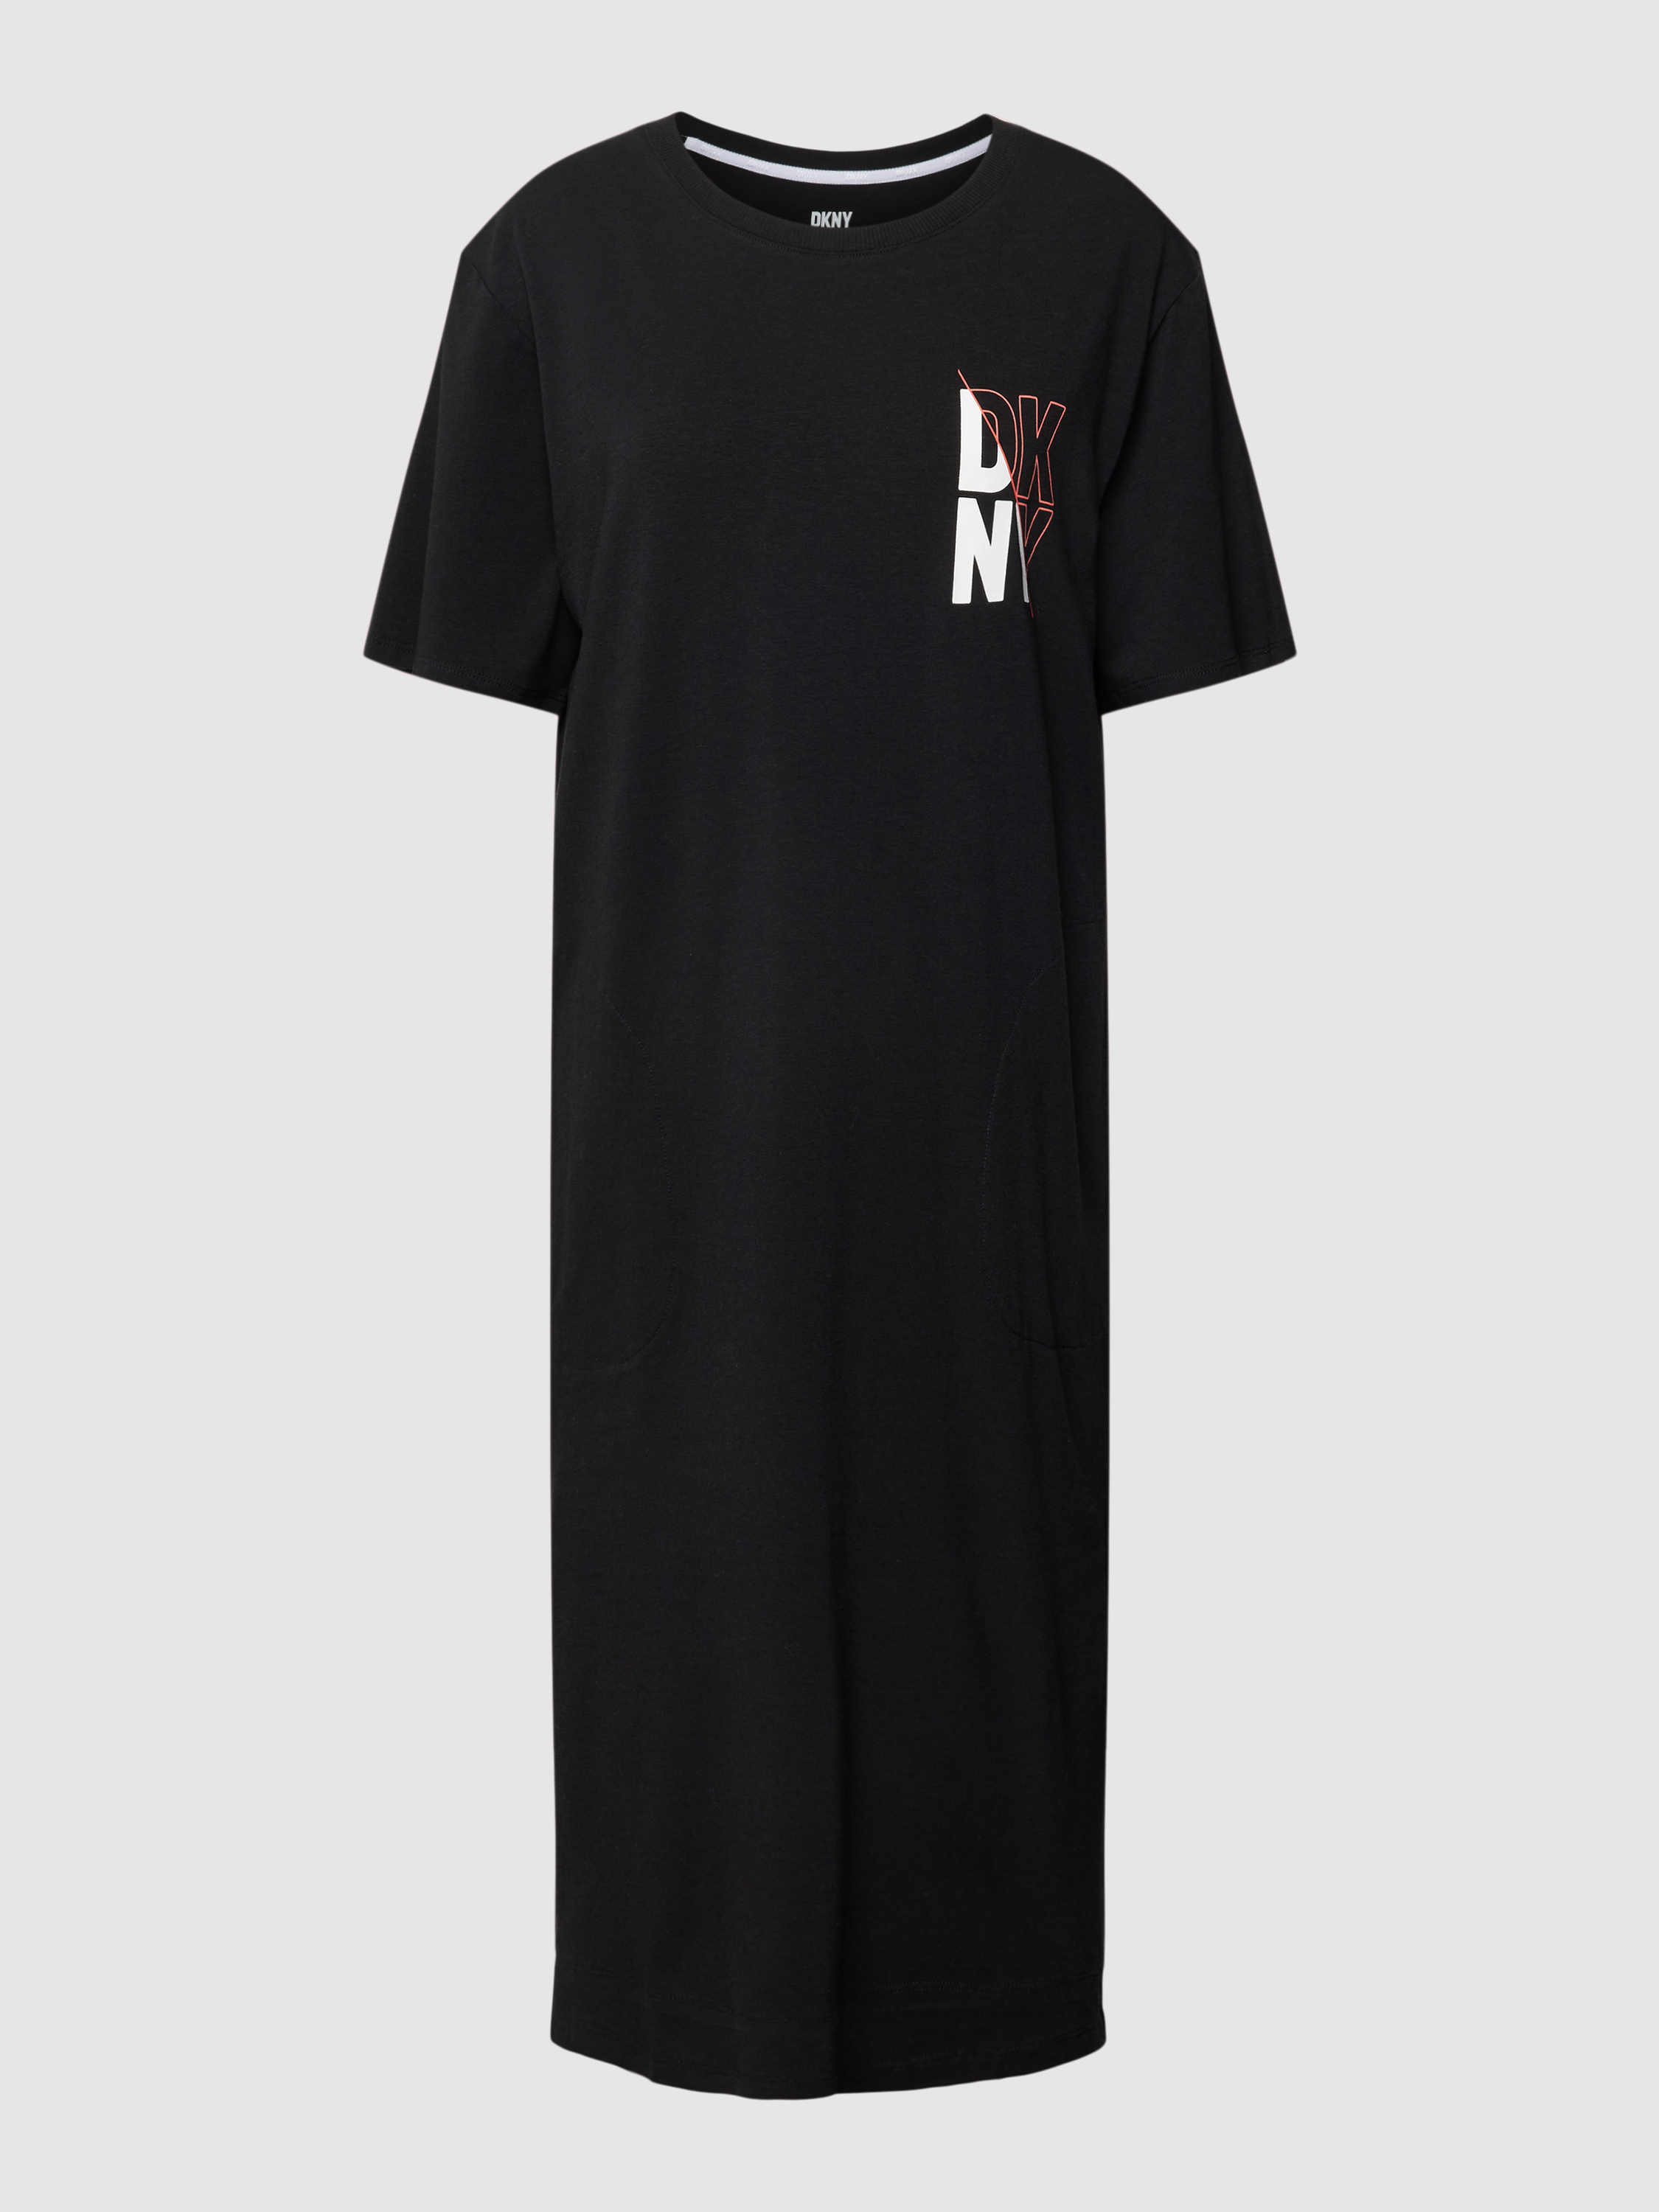 Платье домашнее женское DKNY 1785739 черное XS (доставка из-за рубежа)